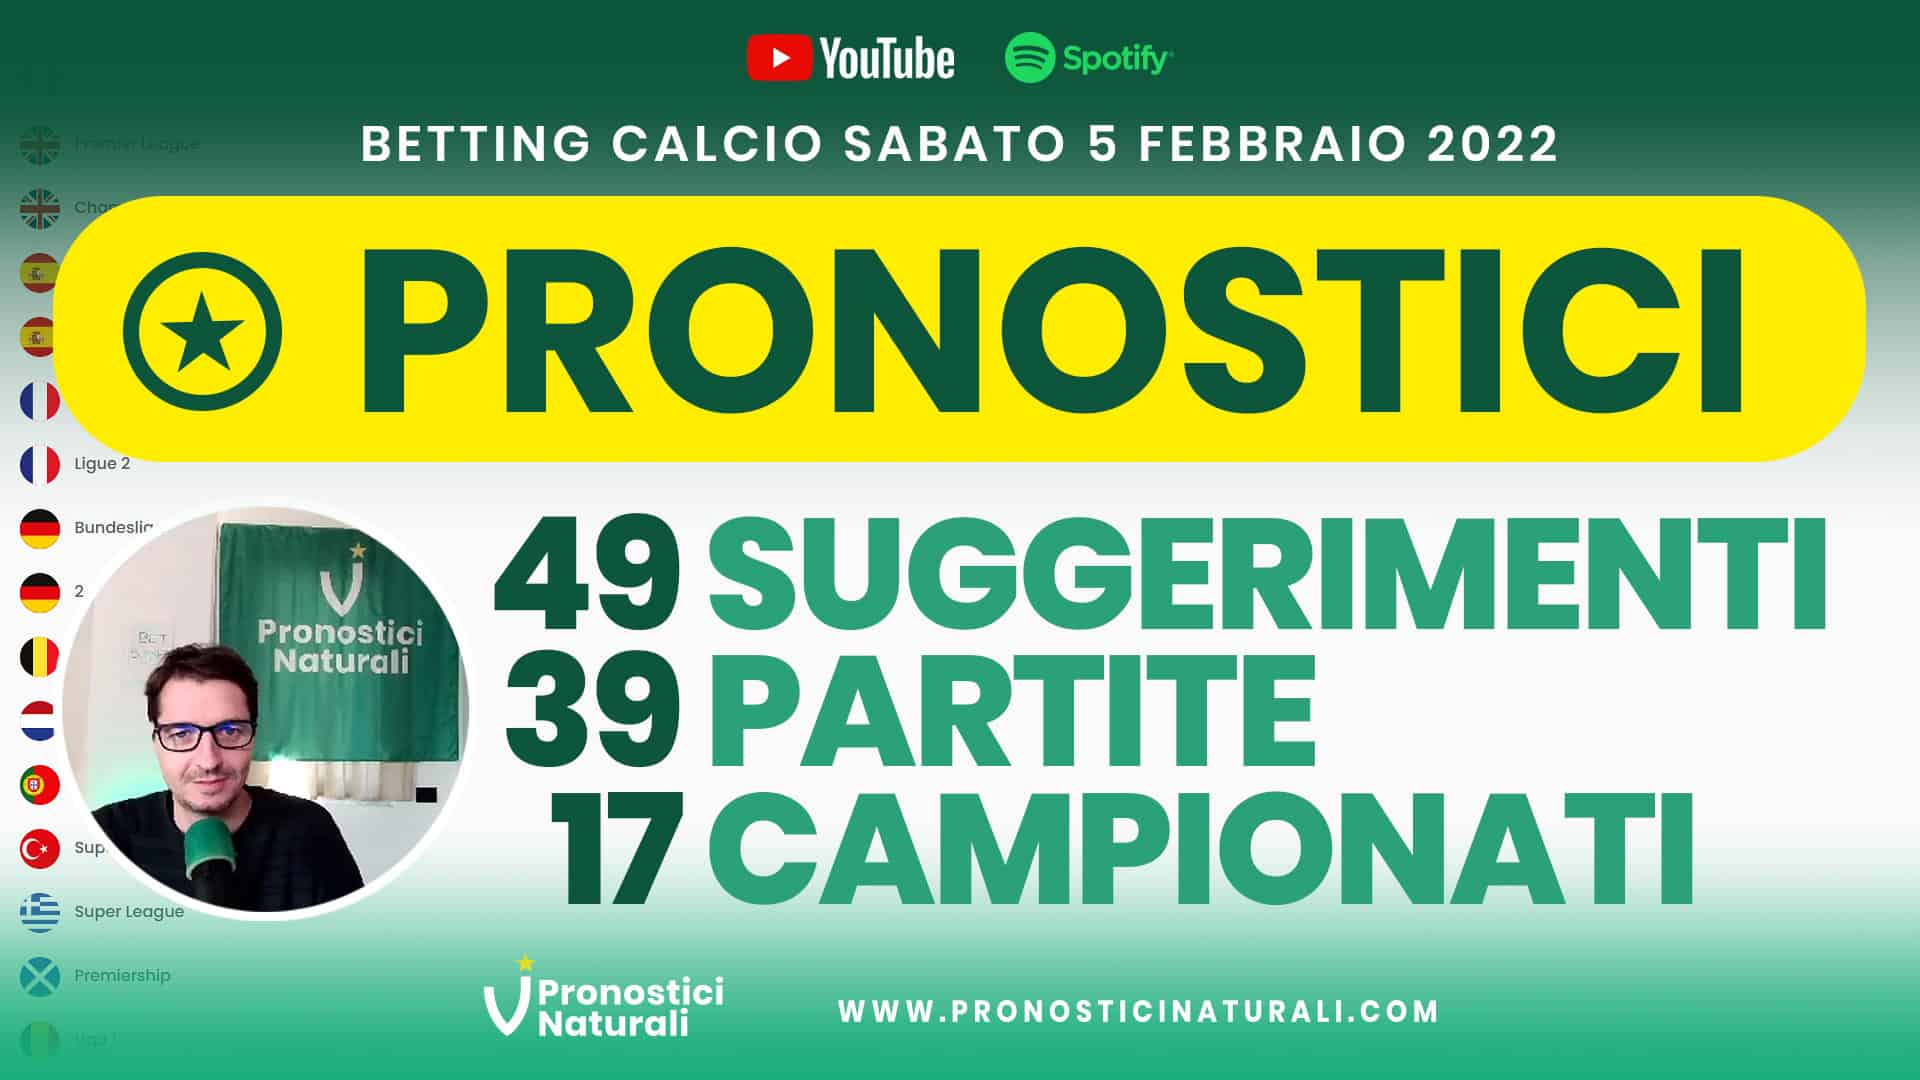 Pronostici Naturali Video Analisi Scommesse Betting Calcio Analisi Pre Partite Sabato 5 Febbraio 2022